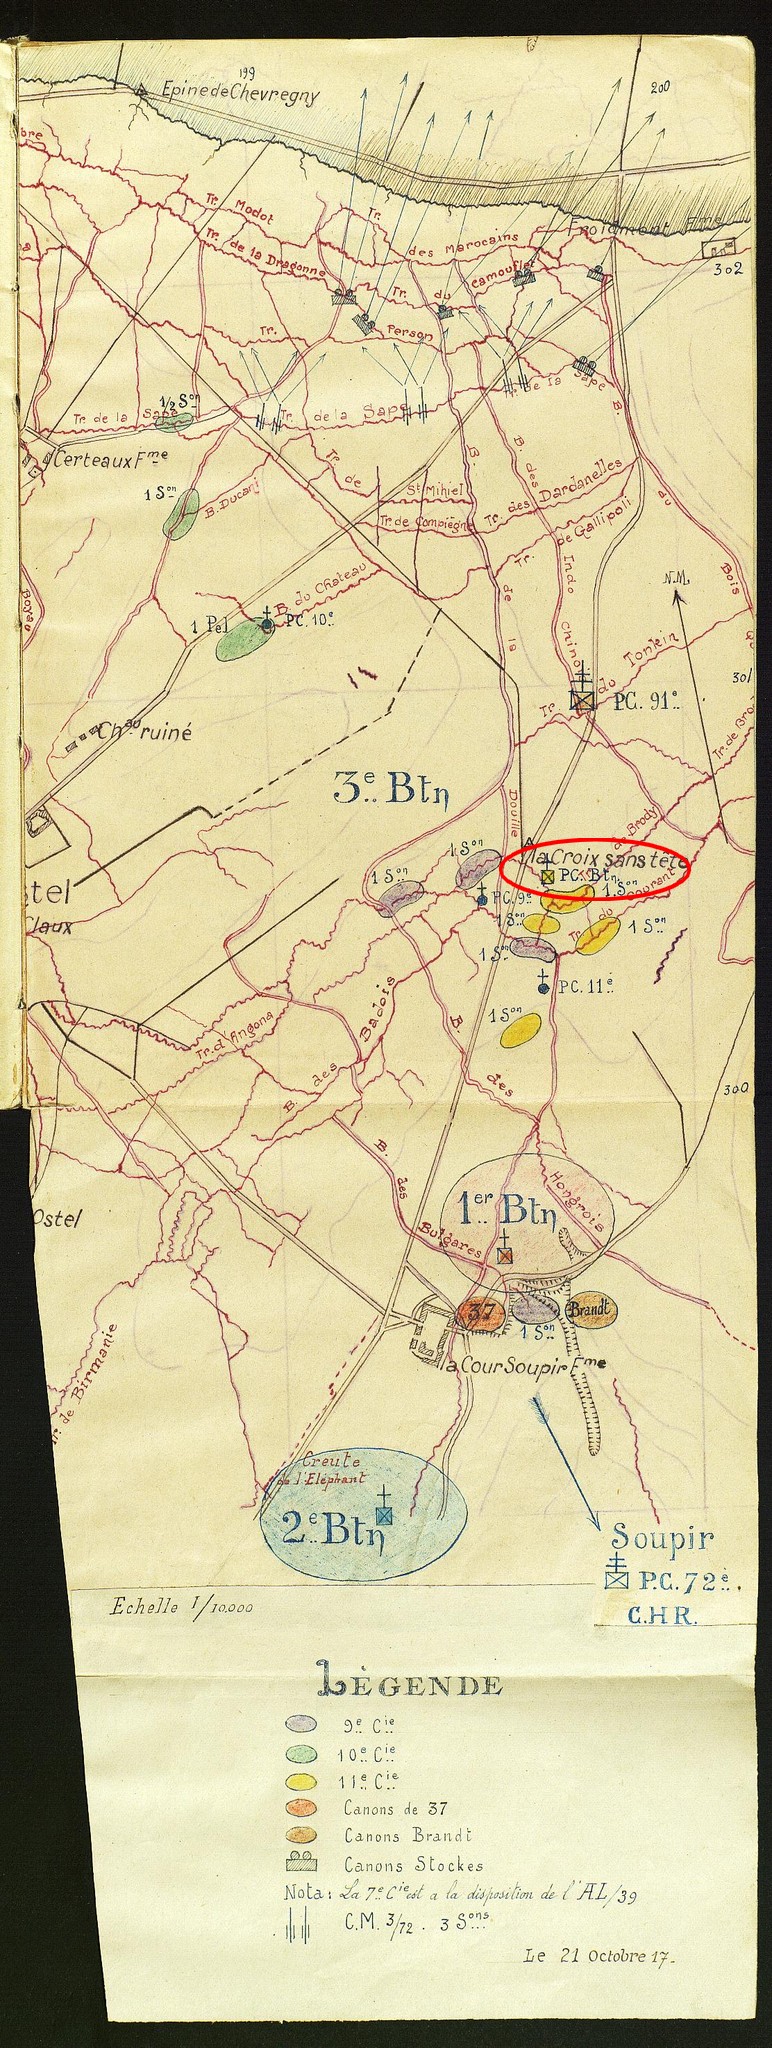 Position du 72èRI le 21-10-1917